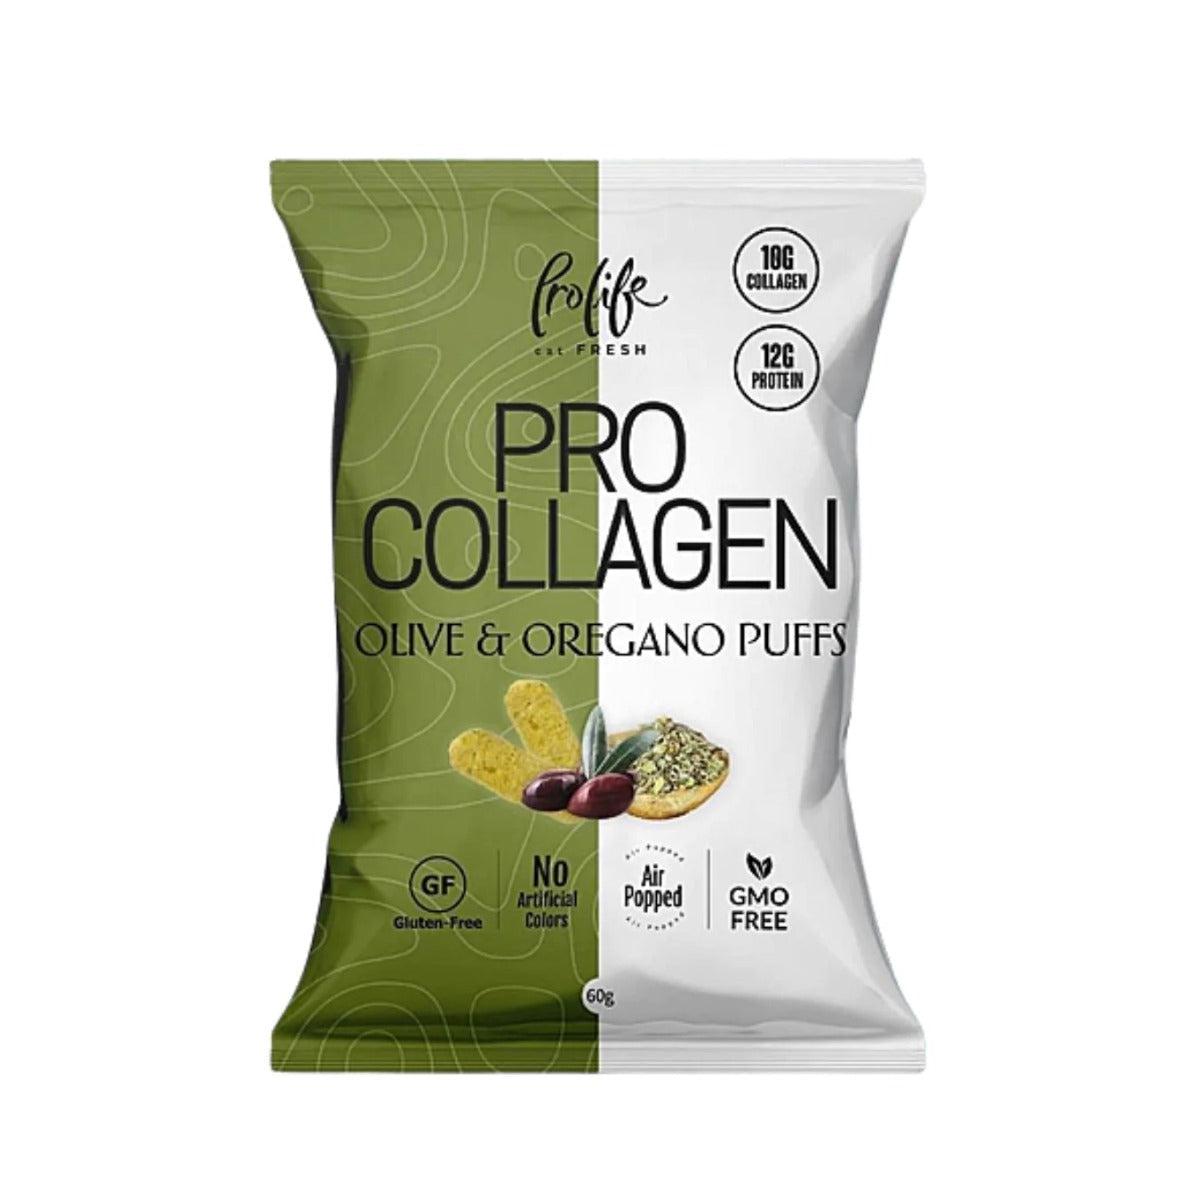 Prolife Collagen Olives & Oregano Puffs Gluten Free 60g